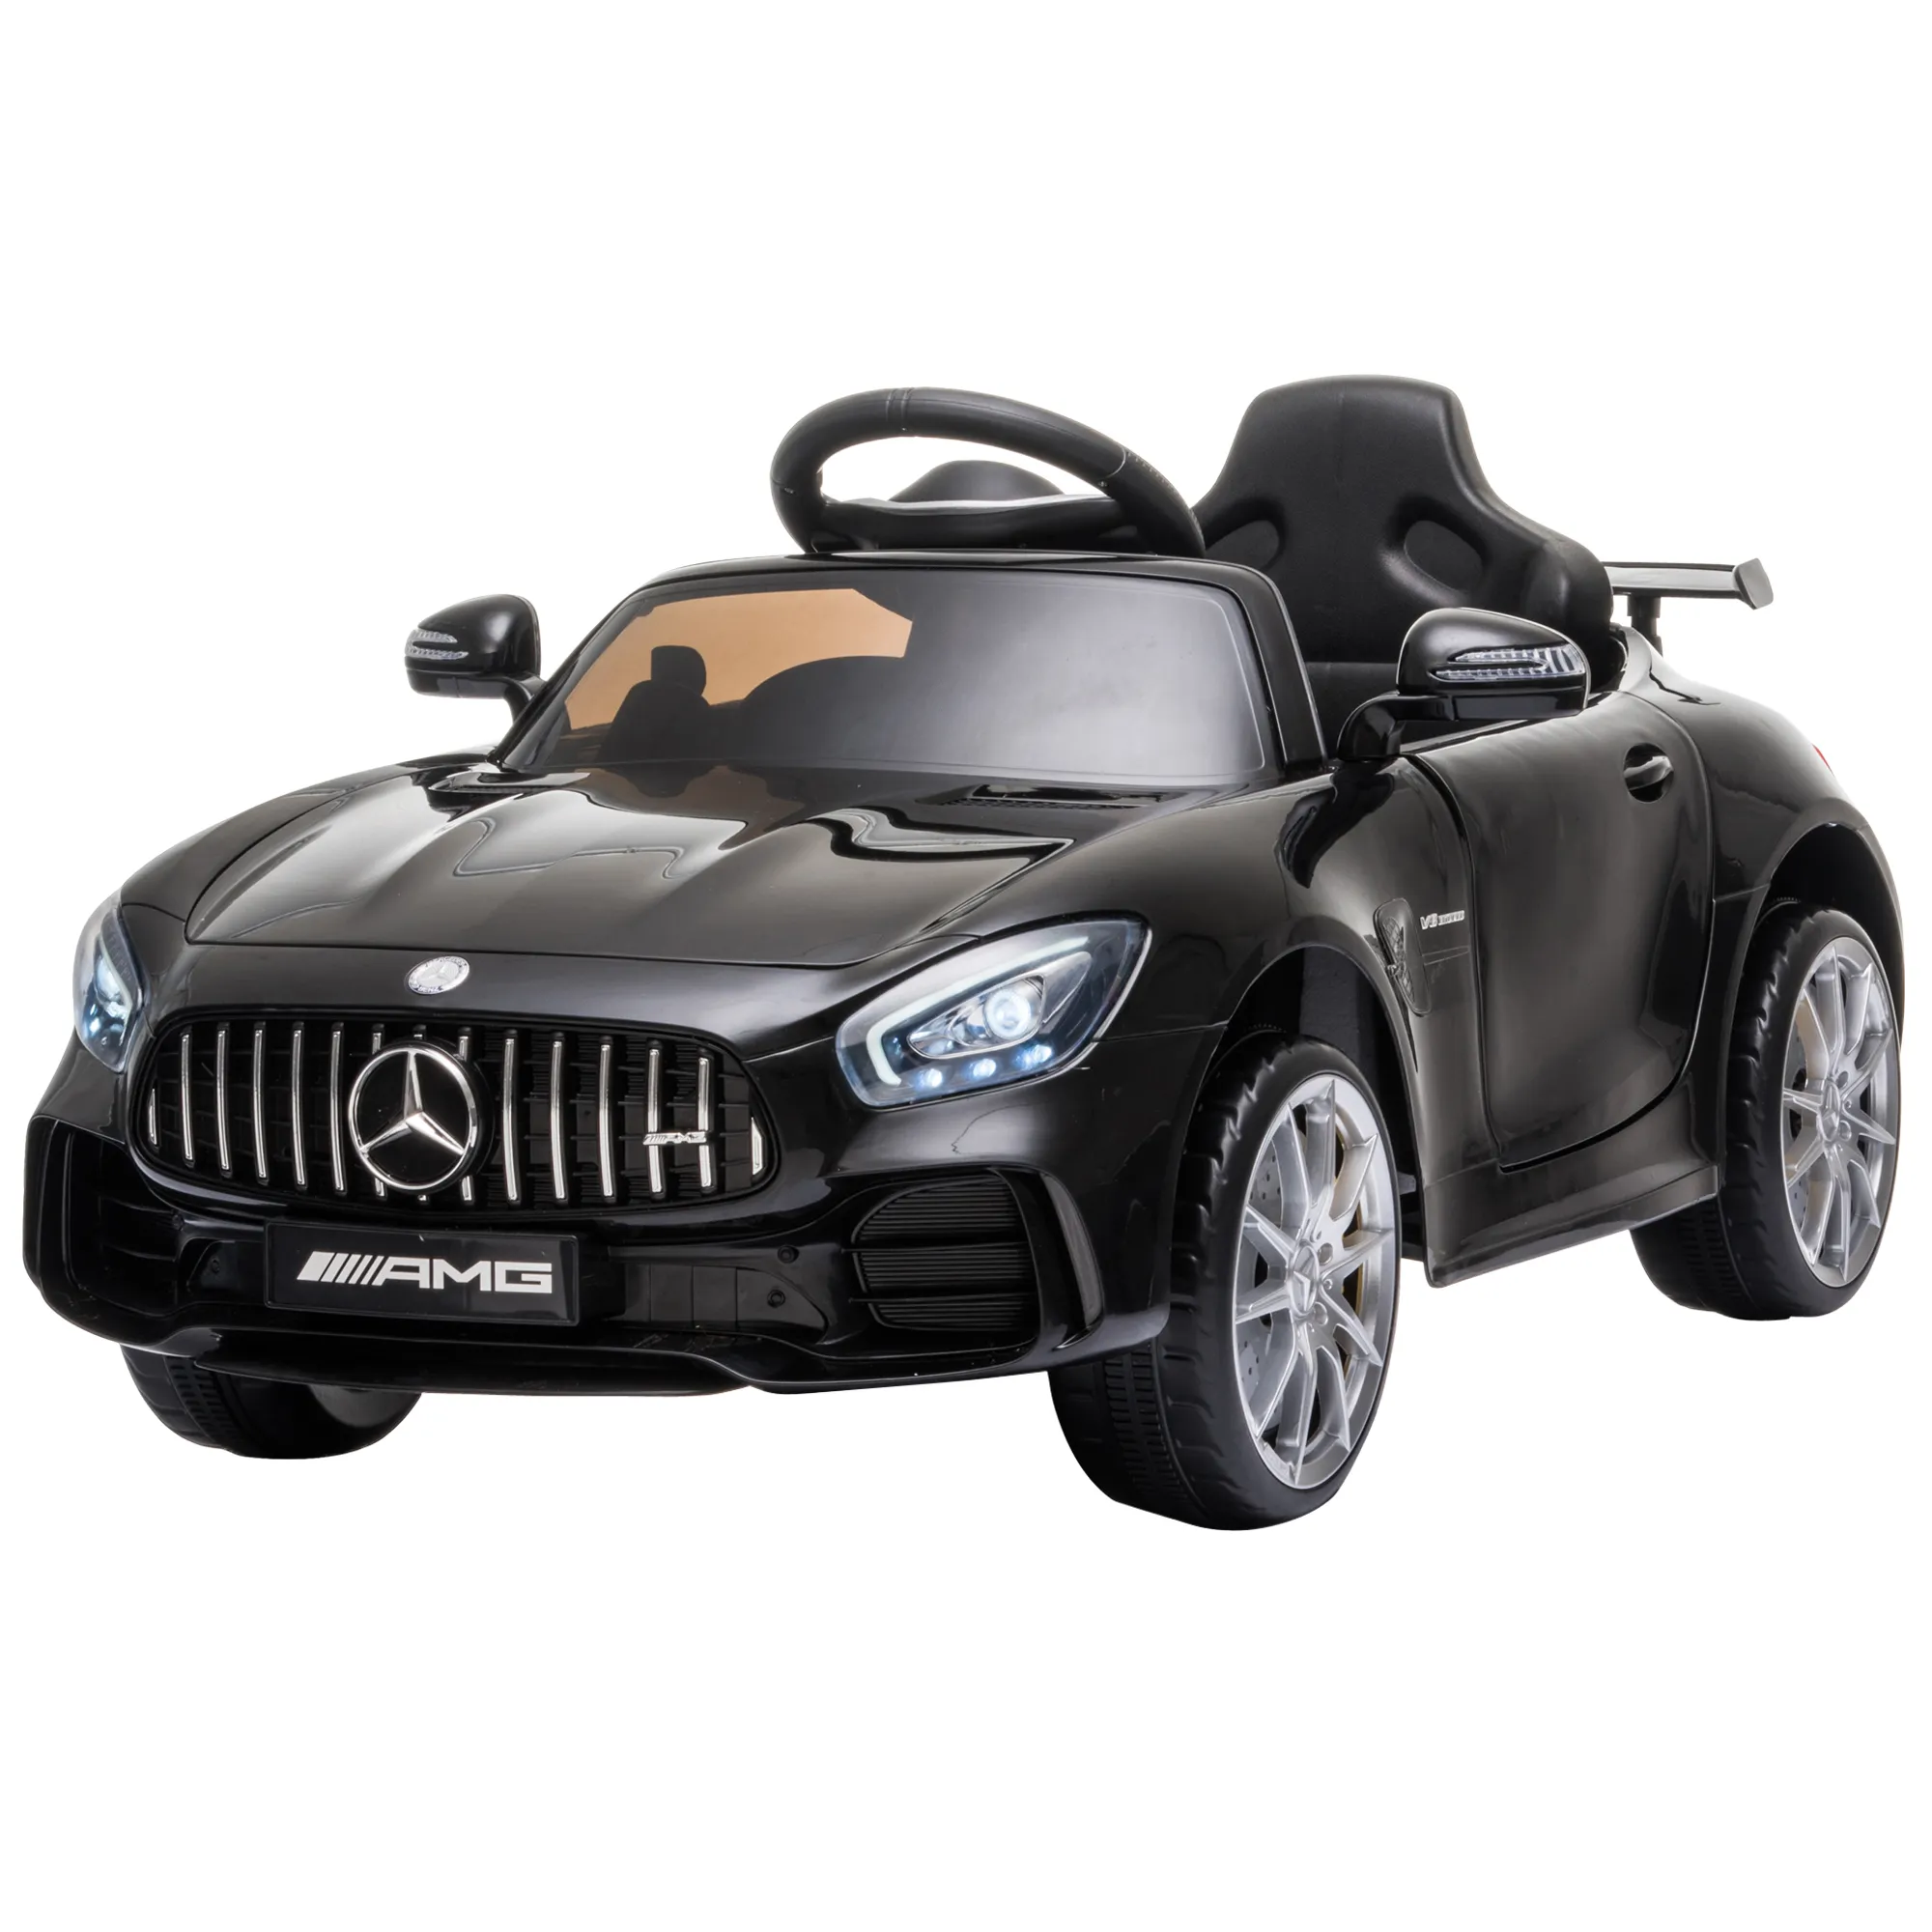  Macchinina Elettrica Mercedes Benz per Bambini con batteria 12V , Velocità 3-5km/h, Telecomando, Luci e Suoni, Nera